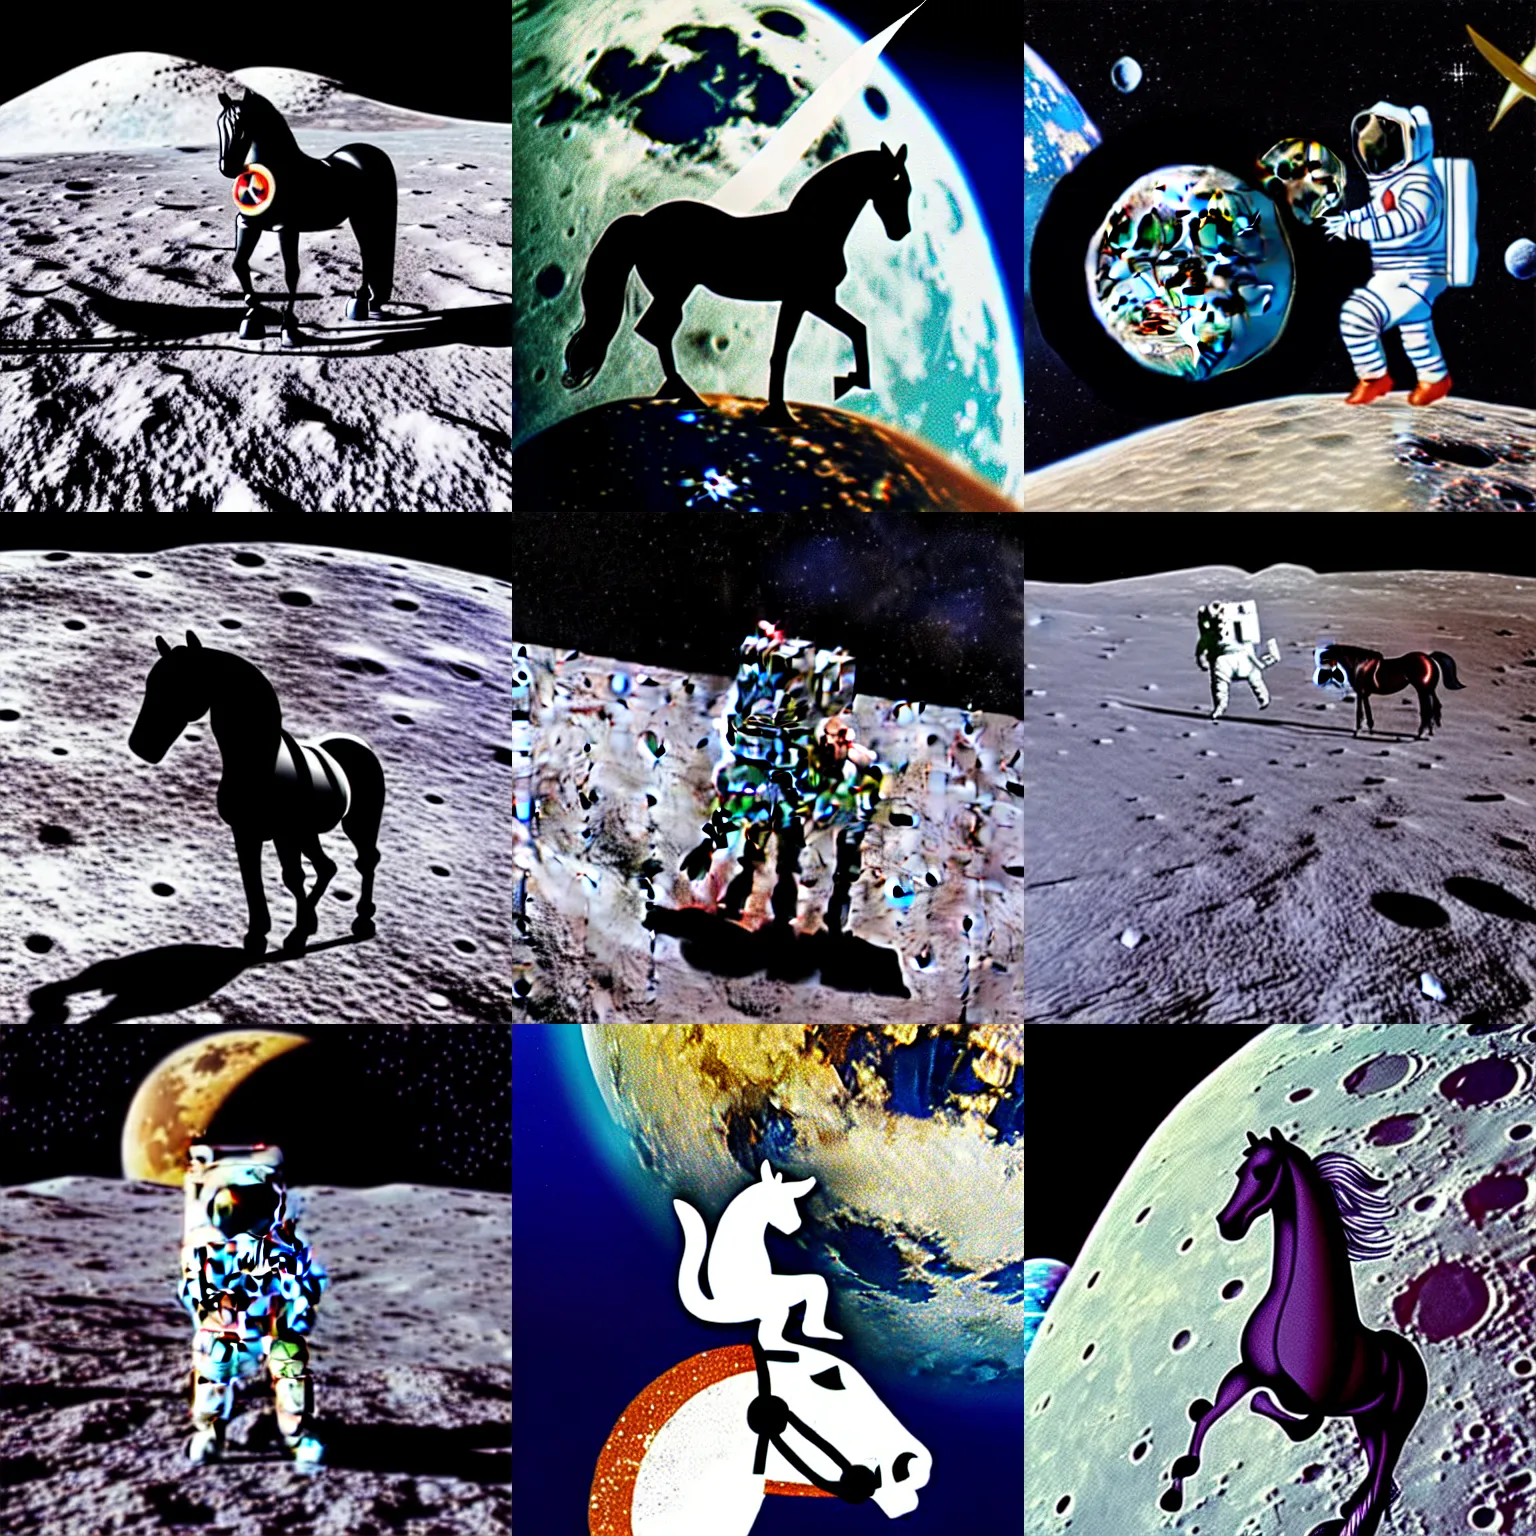 Prompt: horse sitting on astronauts head on moon